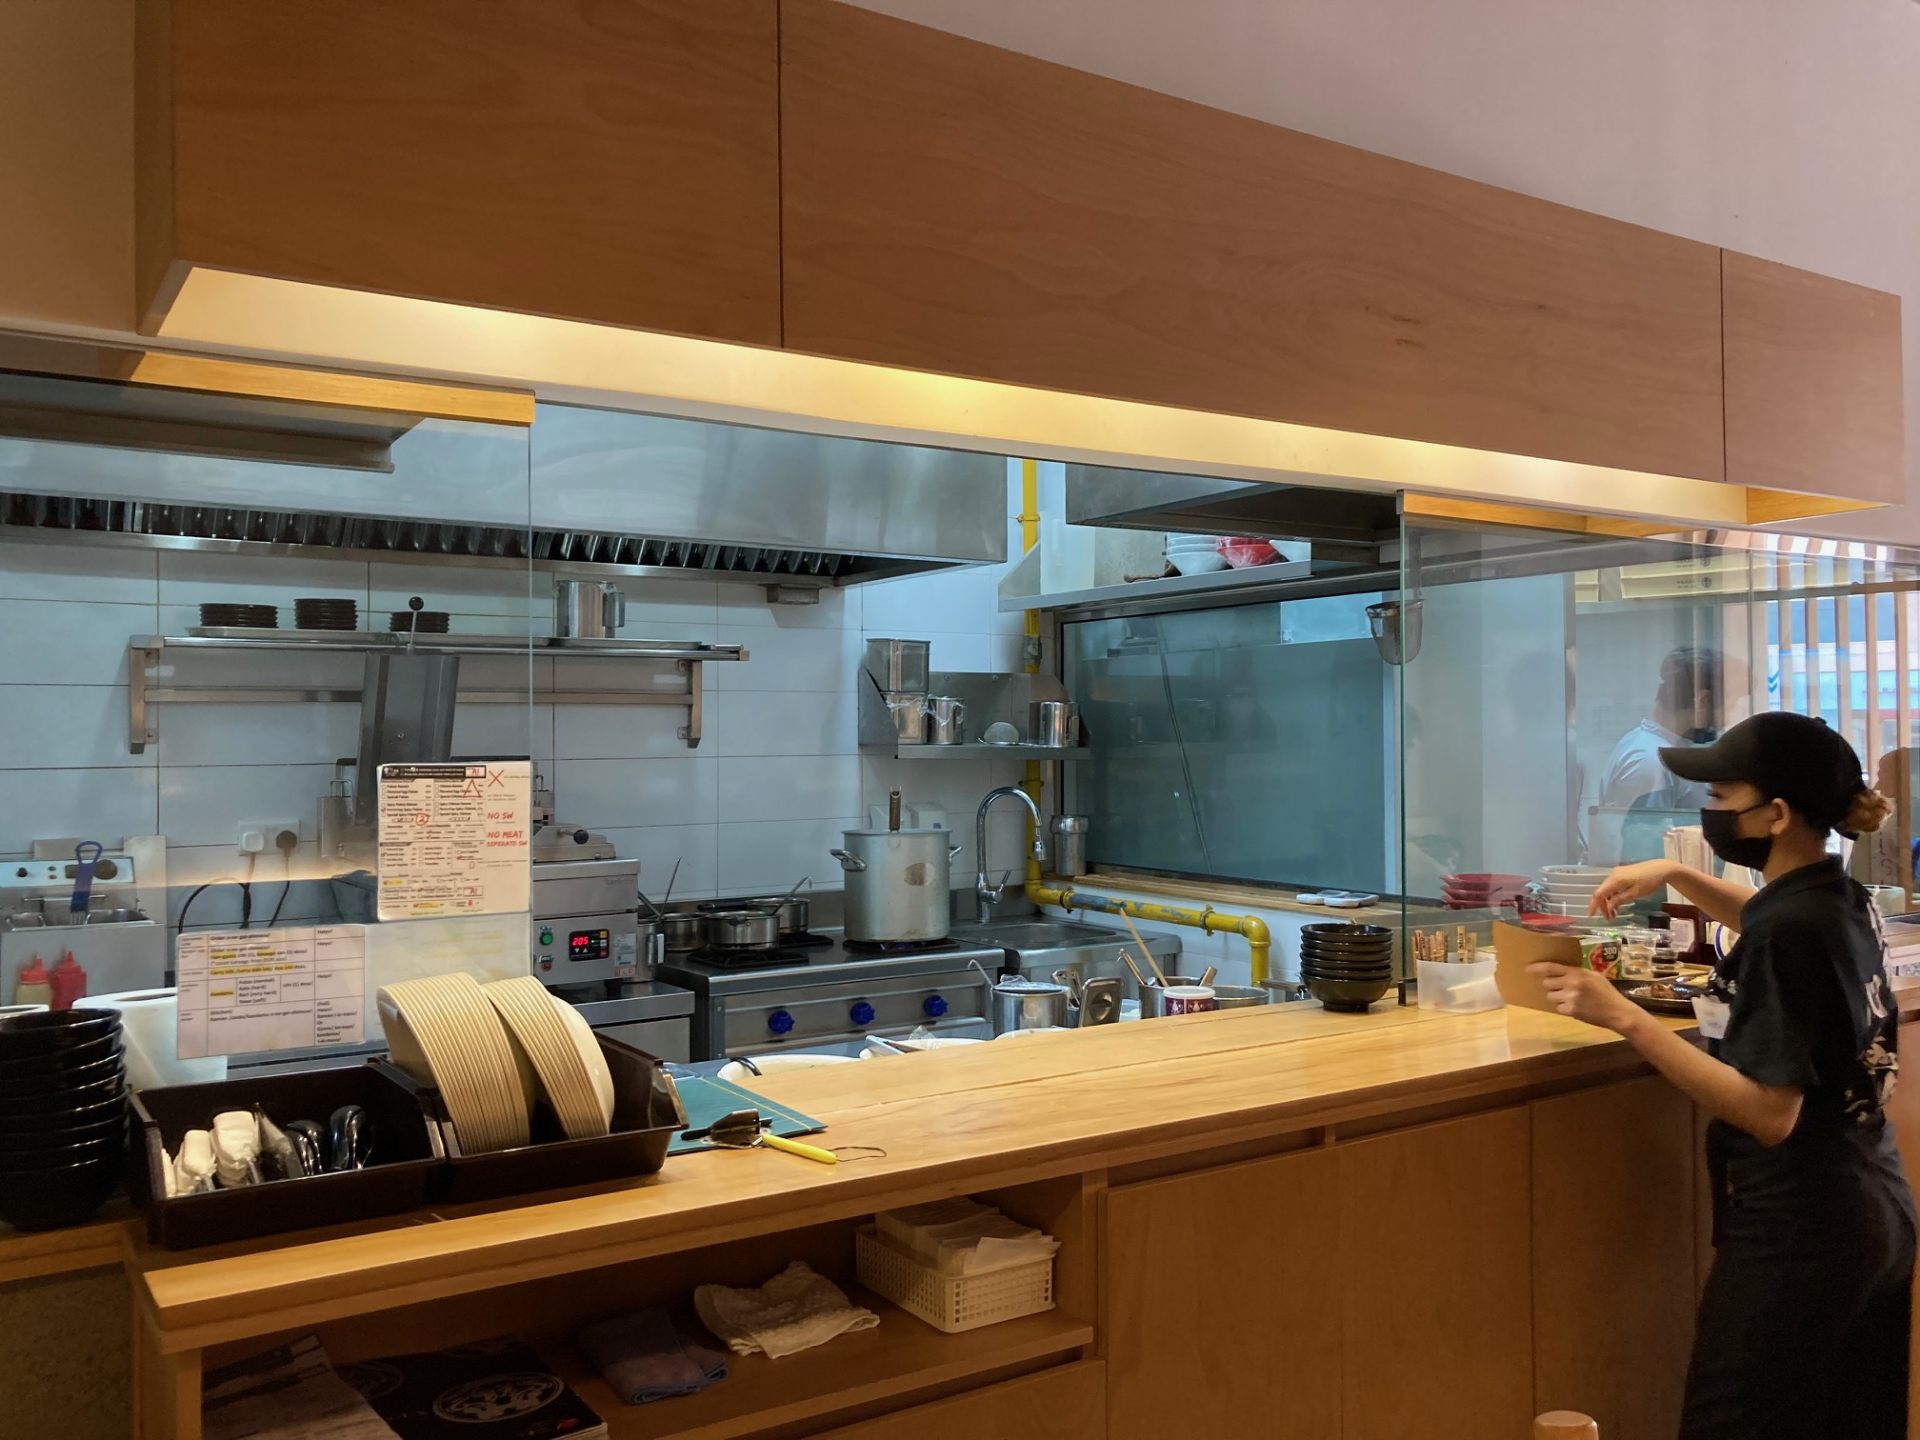 日本のラーメン屋さんのように整った厨房